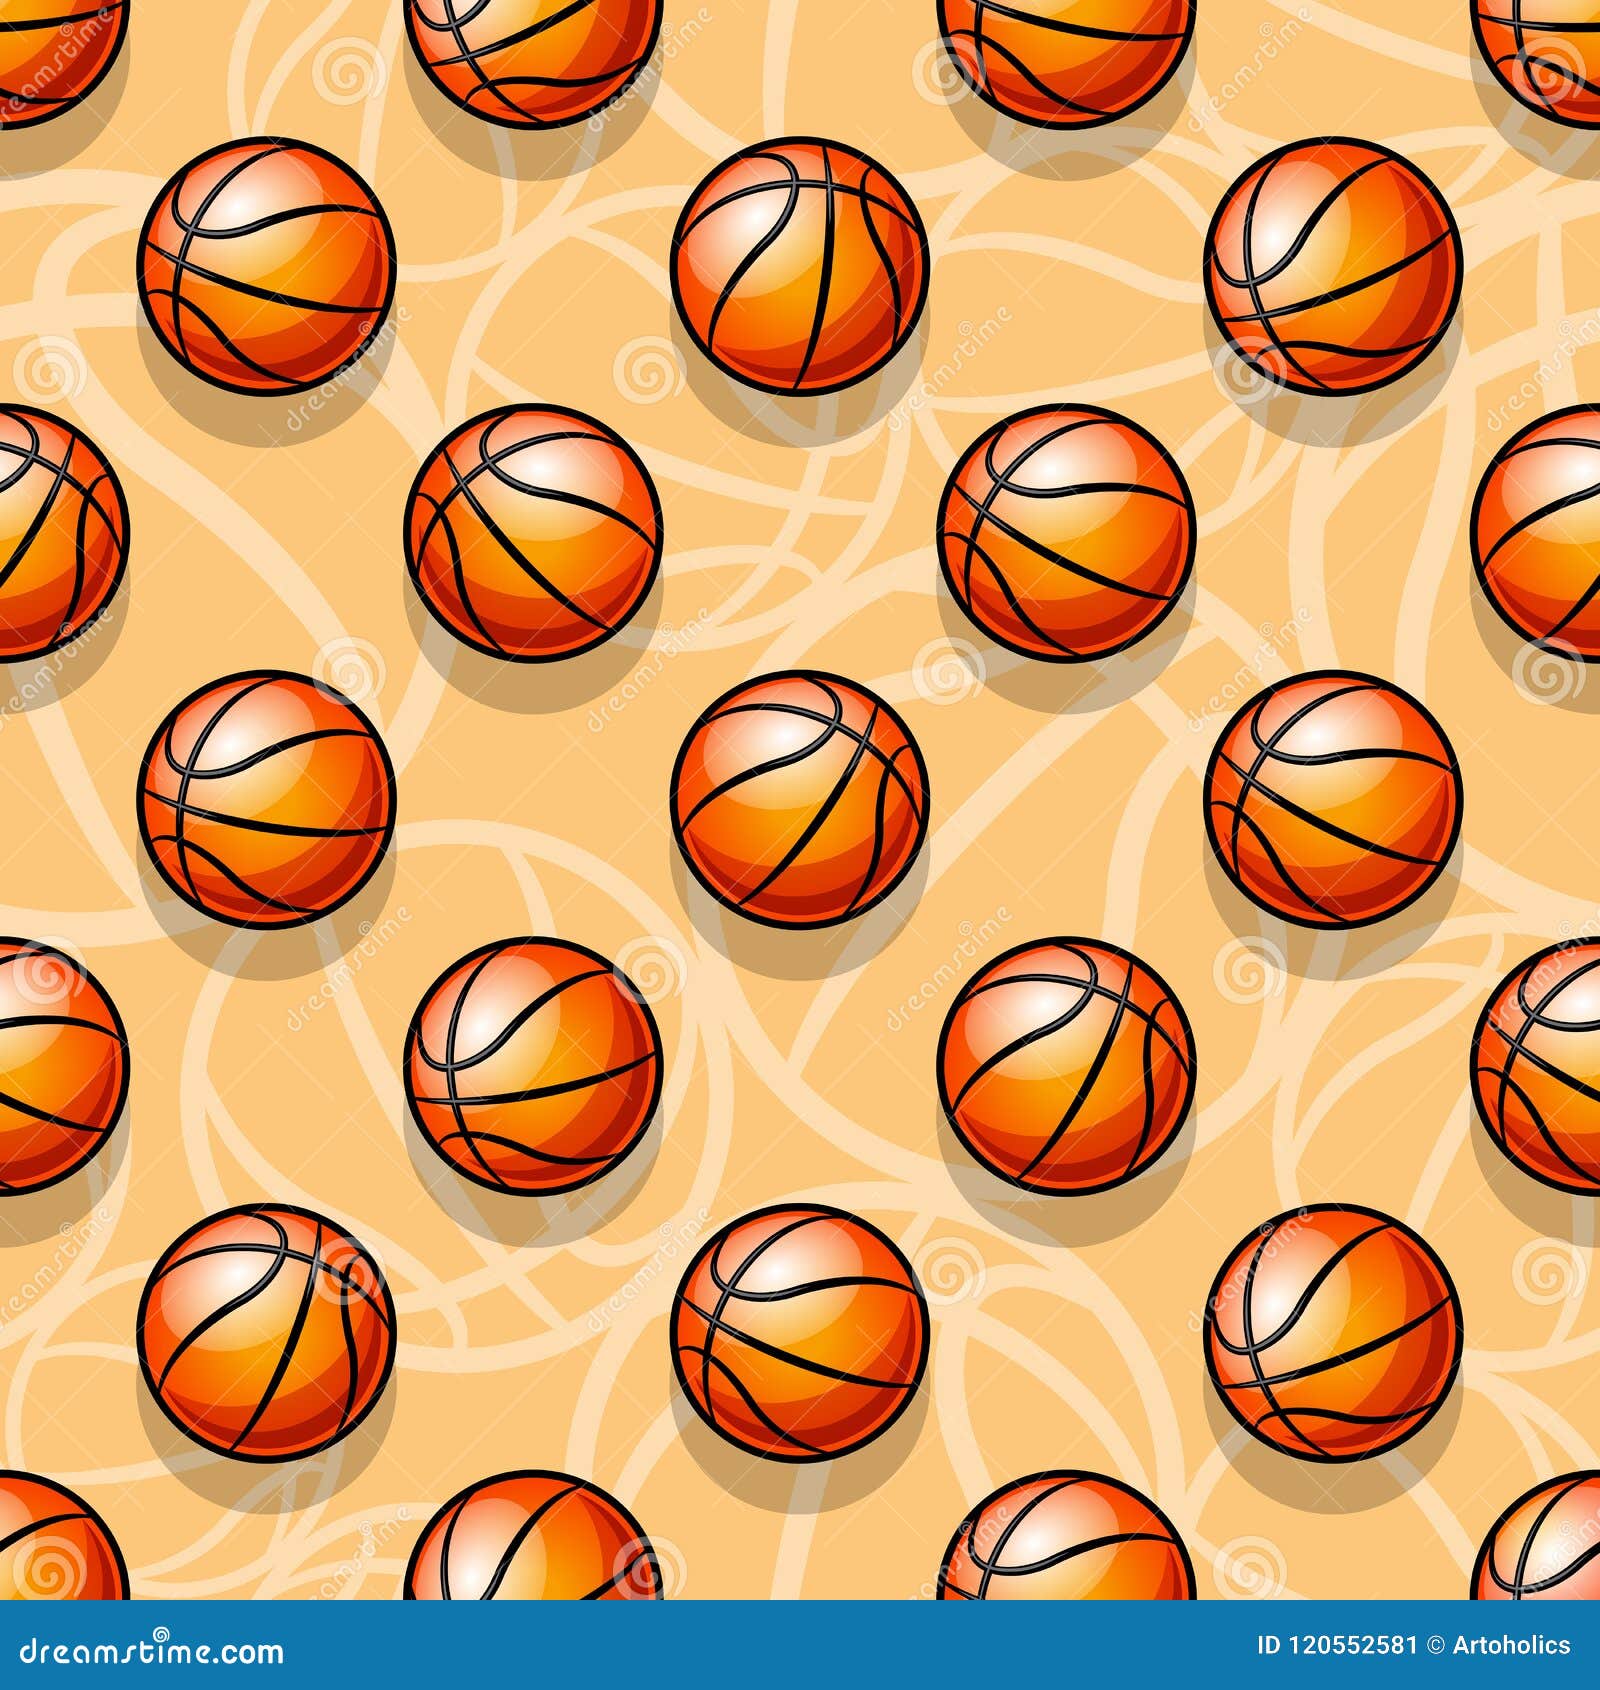 Basketball Ball Wallpapers on WallpaperDog